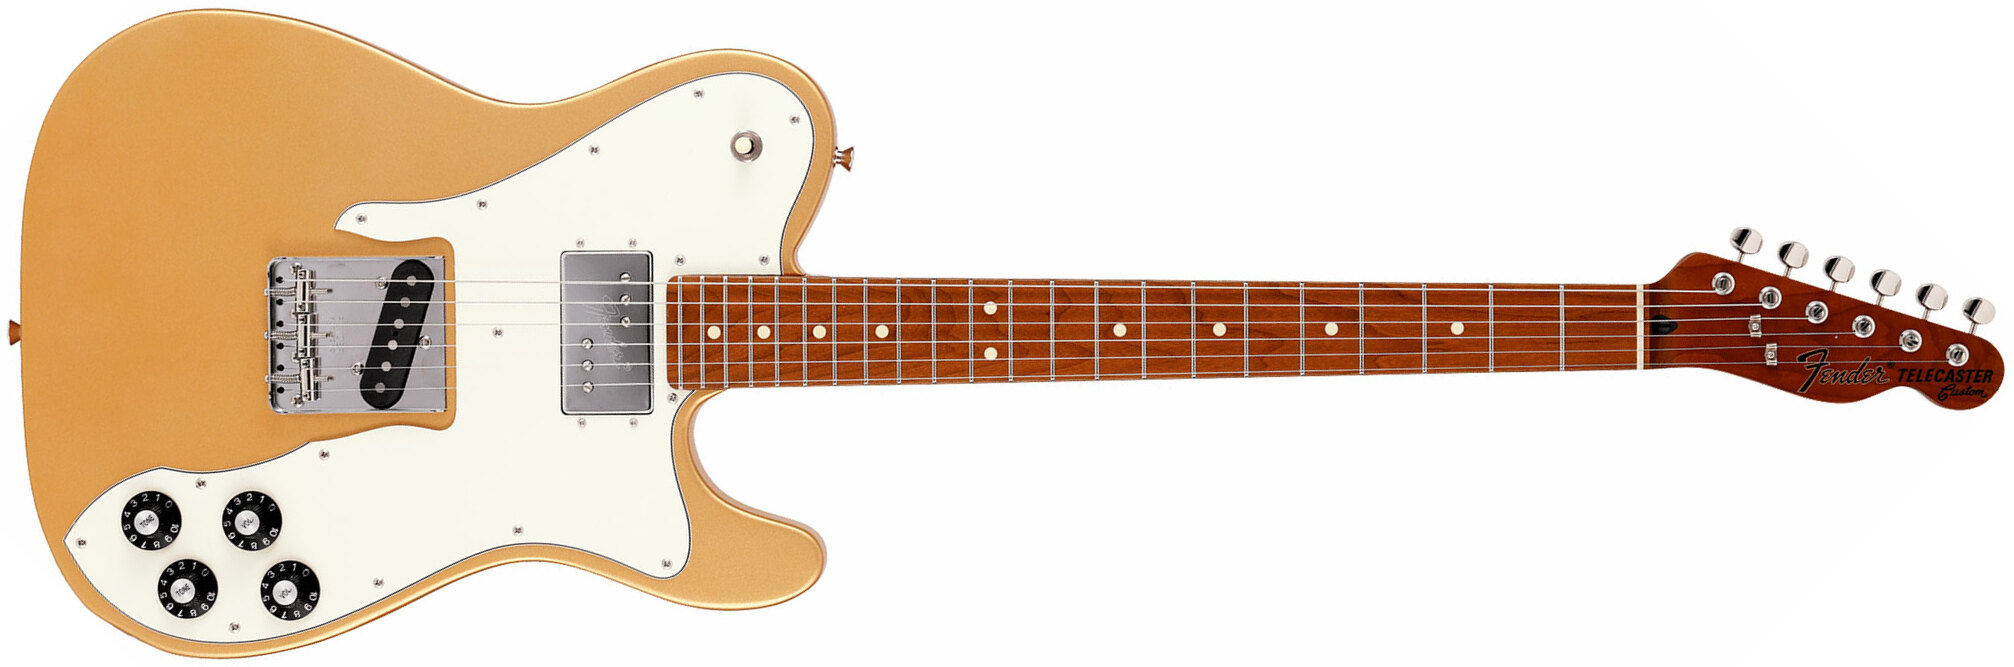 Fender Tele Hybrid Custom Jap Ltd Ht Hs Mn - Gold - E-Gitarre in Teleform - Main picture